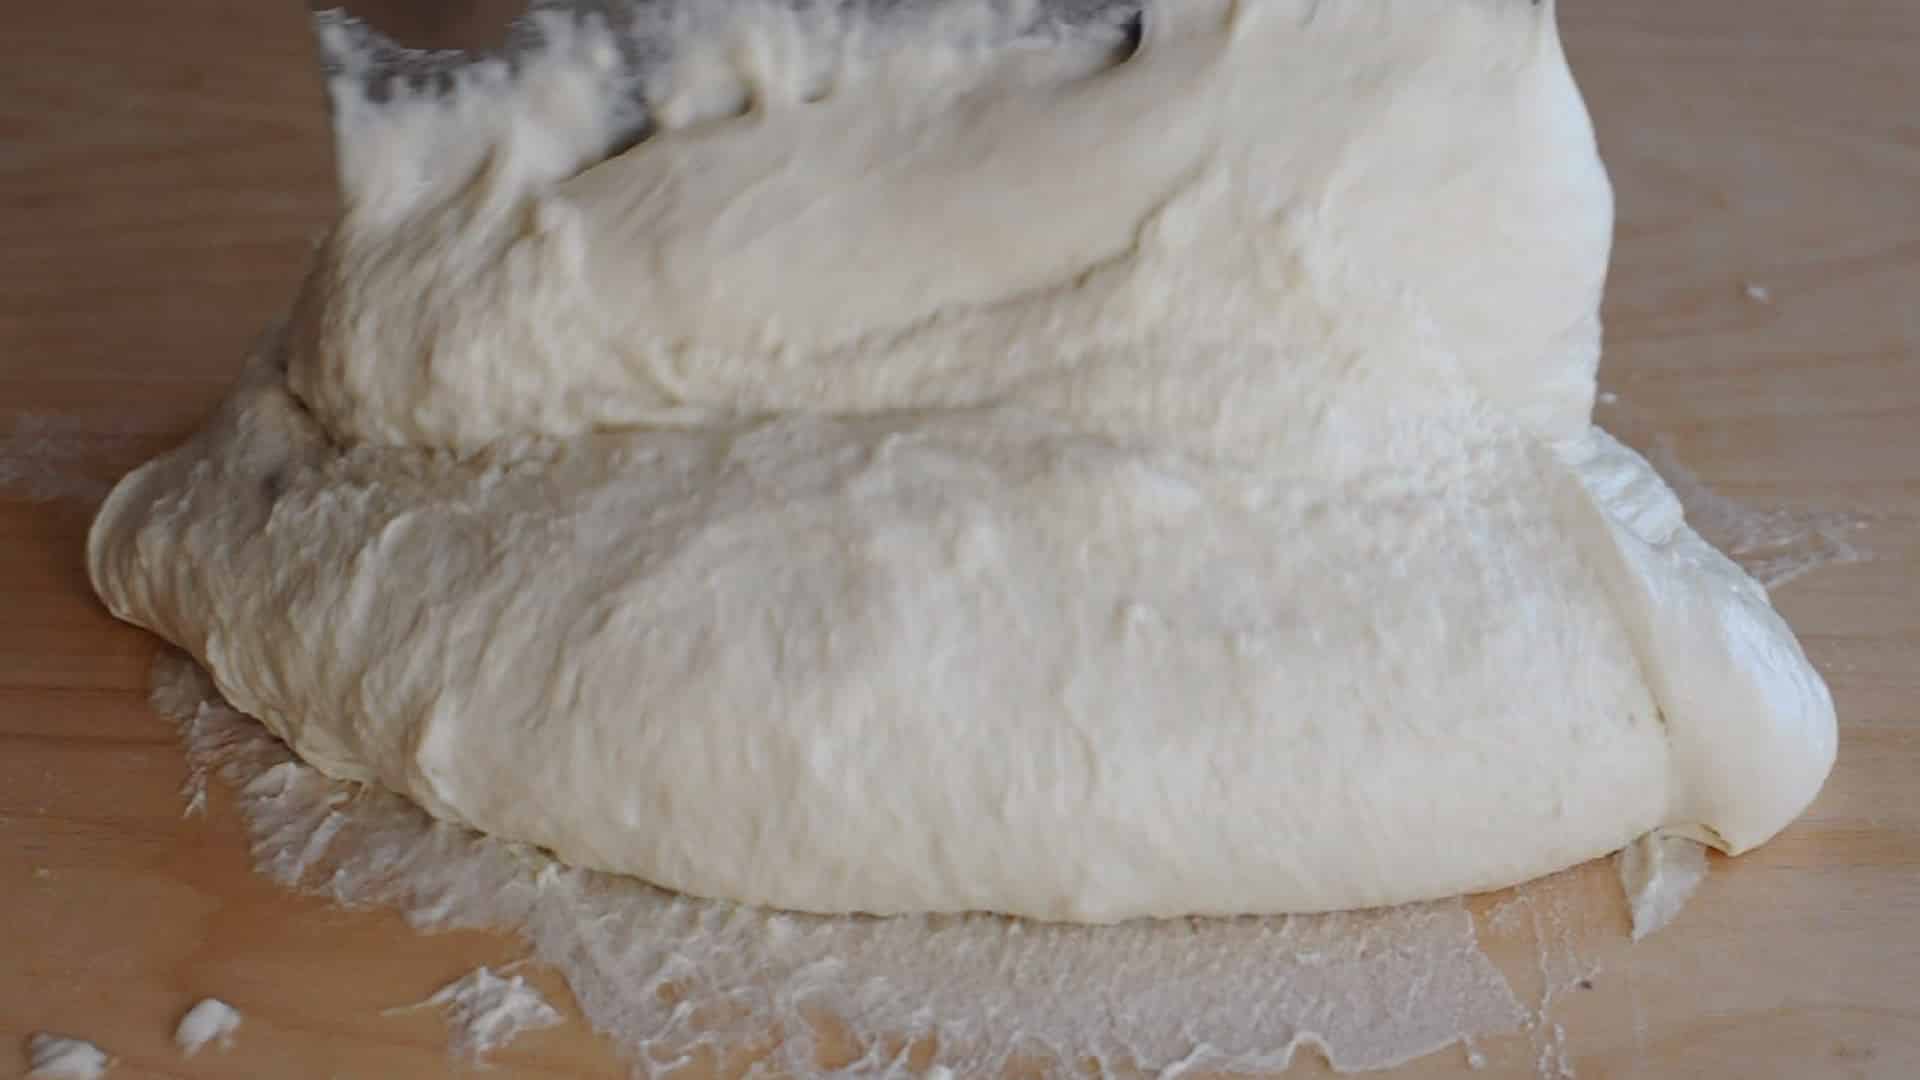 Lift the dough toward the center